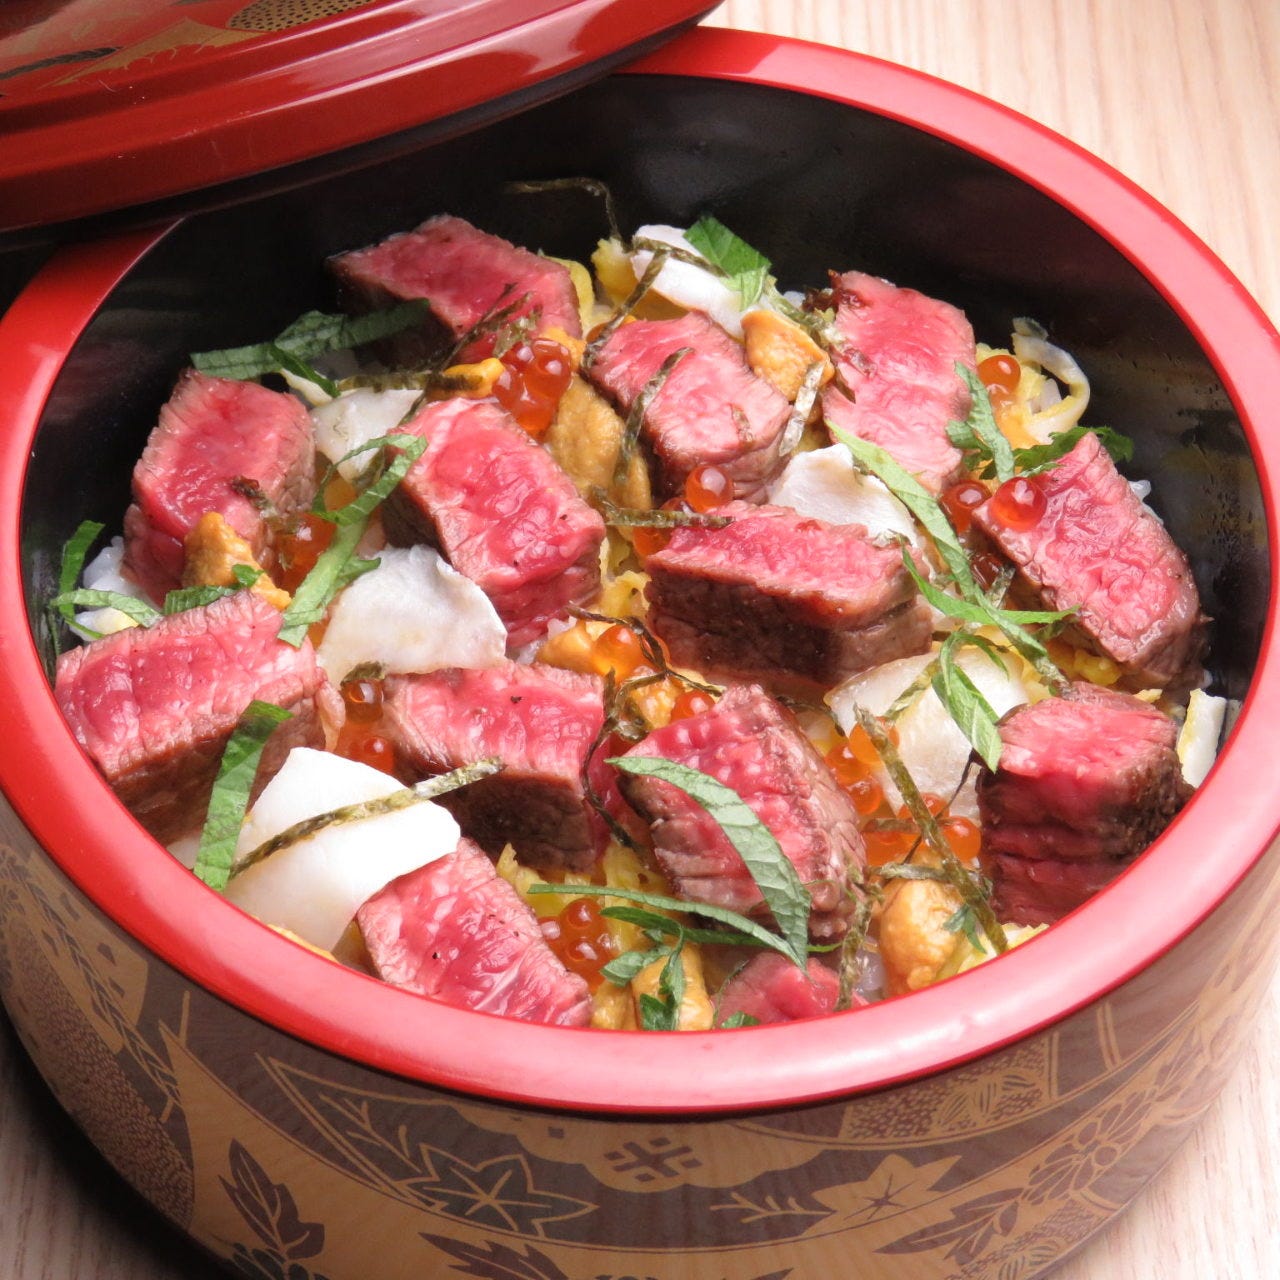 寿司桶に近江町市場の能登牛×こだわり肉料理 ミートミートの「能登牛ちらし寿司」が盛られている